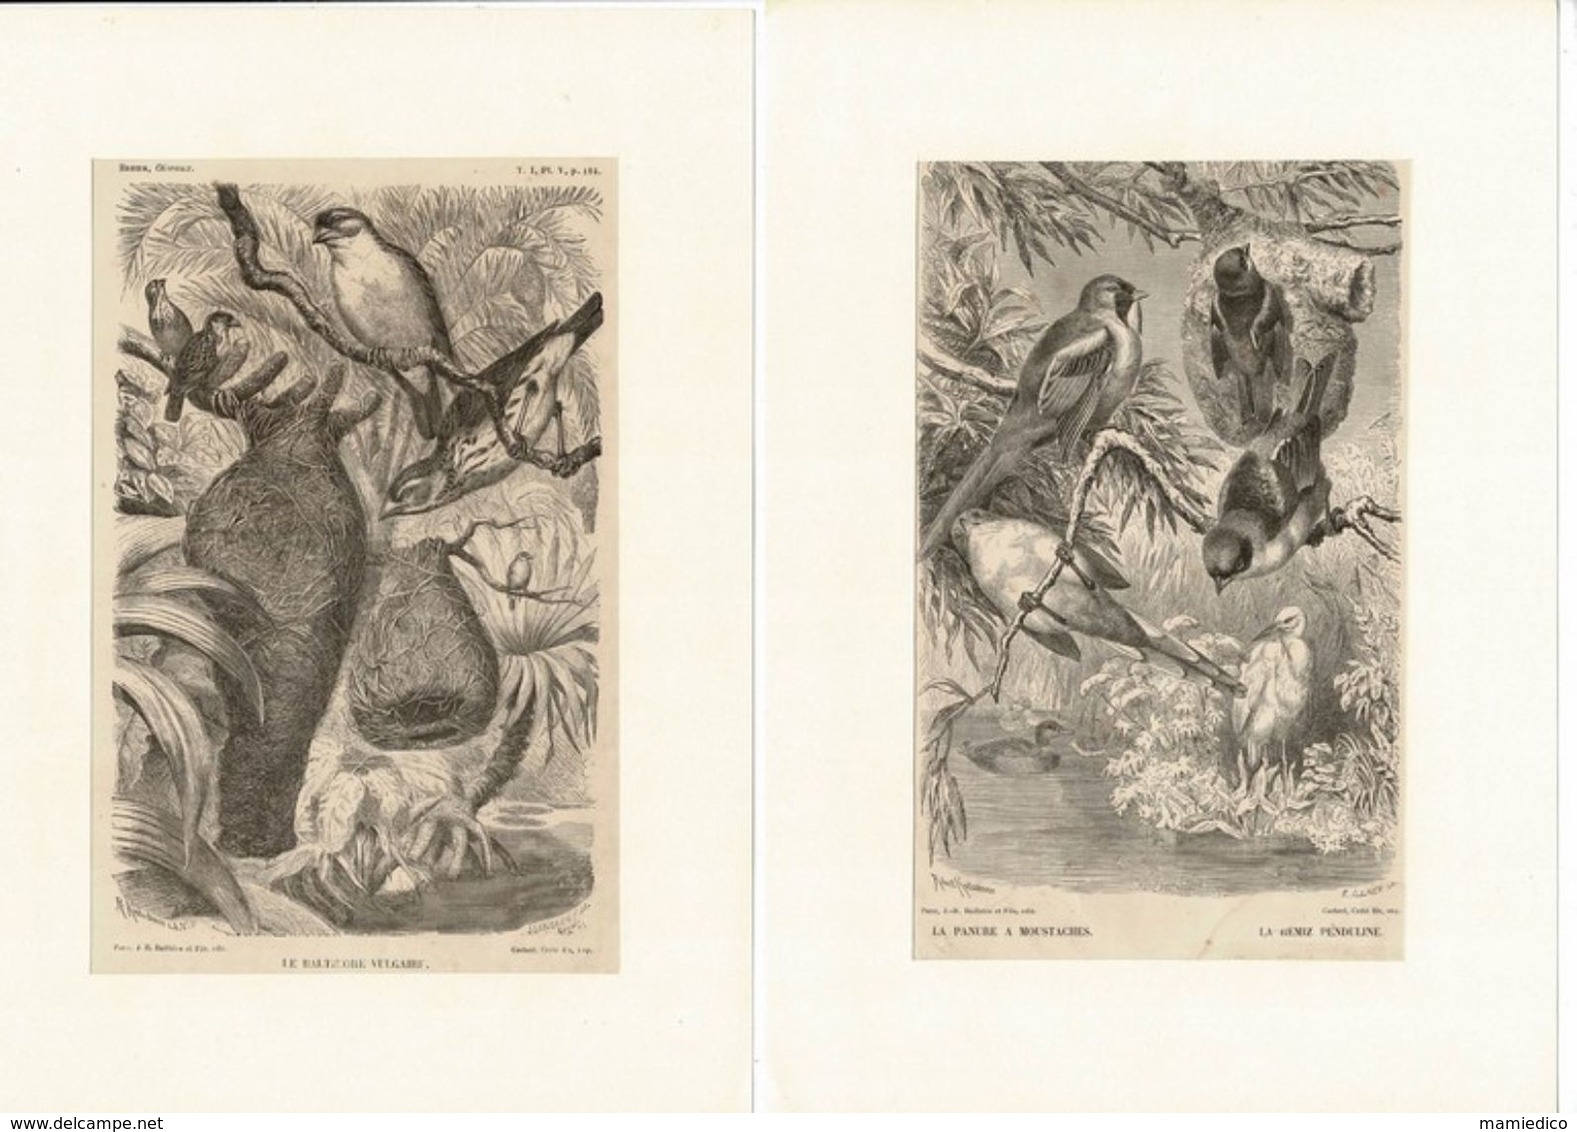 12 Gravures Sur Bois Extraites De La Vie Des Animaux De A.E. BREHM 1878 Les OISEAUX. Format Du Support 21/29,7cm. Lot 1 - Prints & Engravings